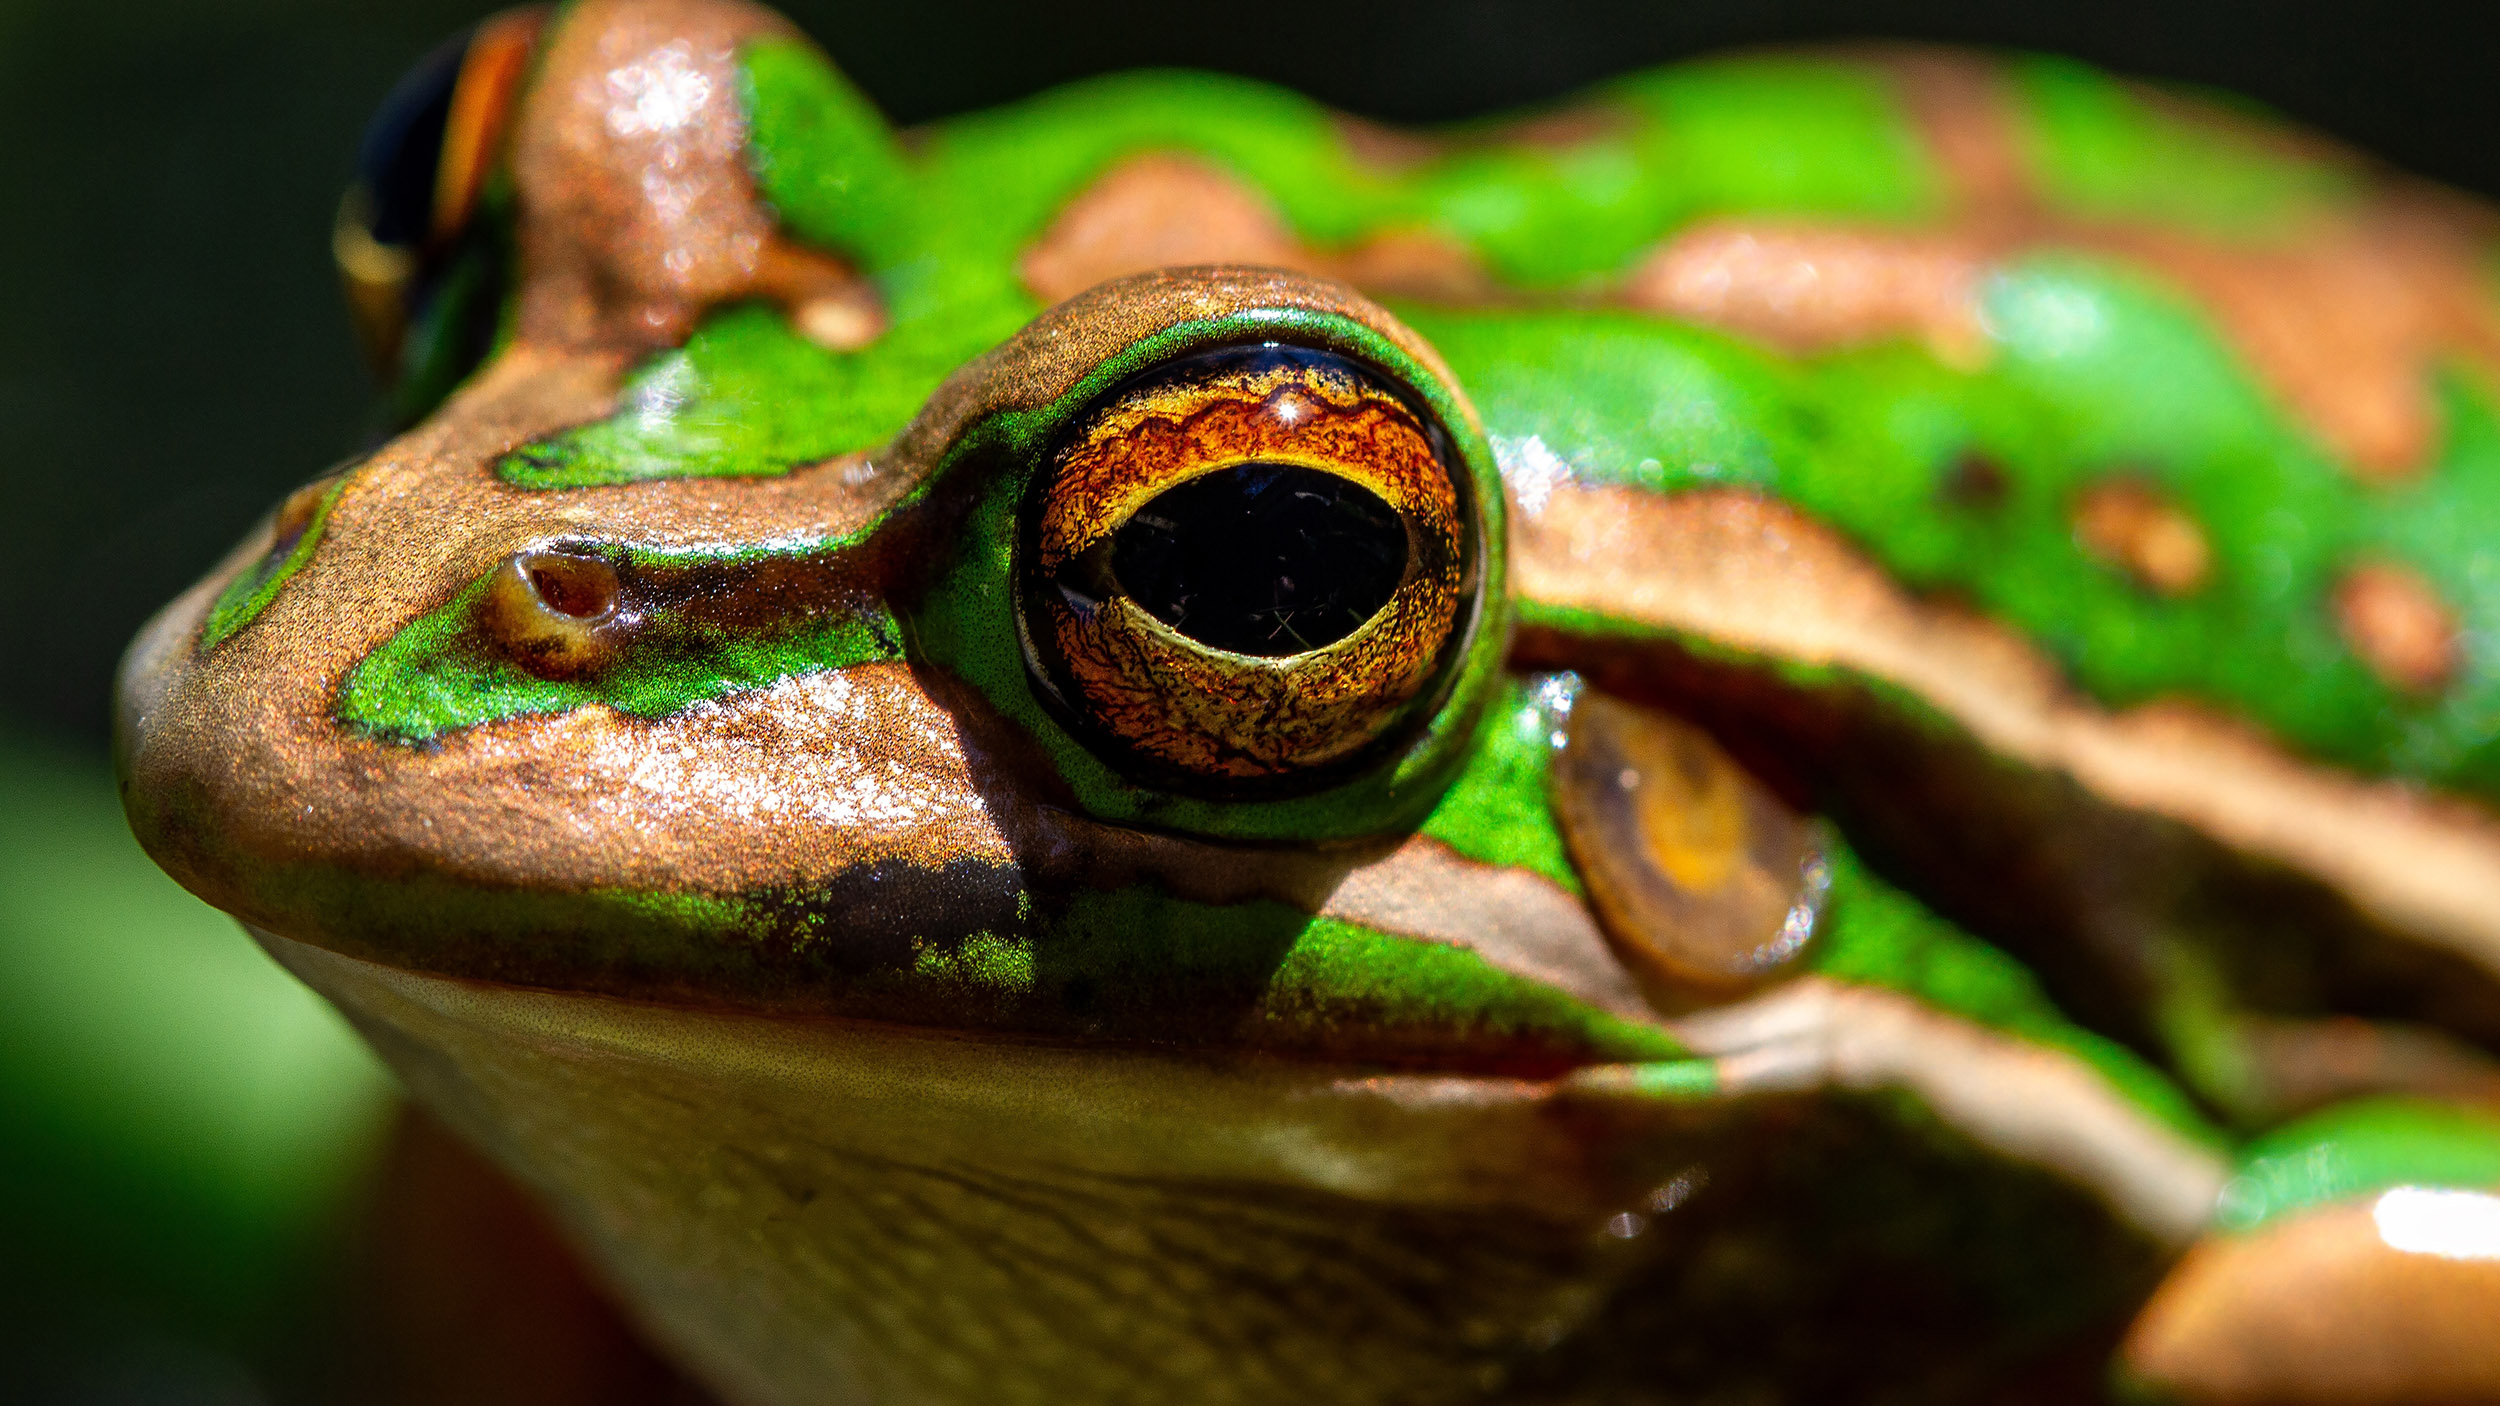 Las 'saunas de ranas' podrían ayudar a combatir hongos anfibios mortales »Explorersweb